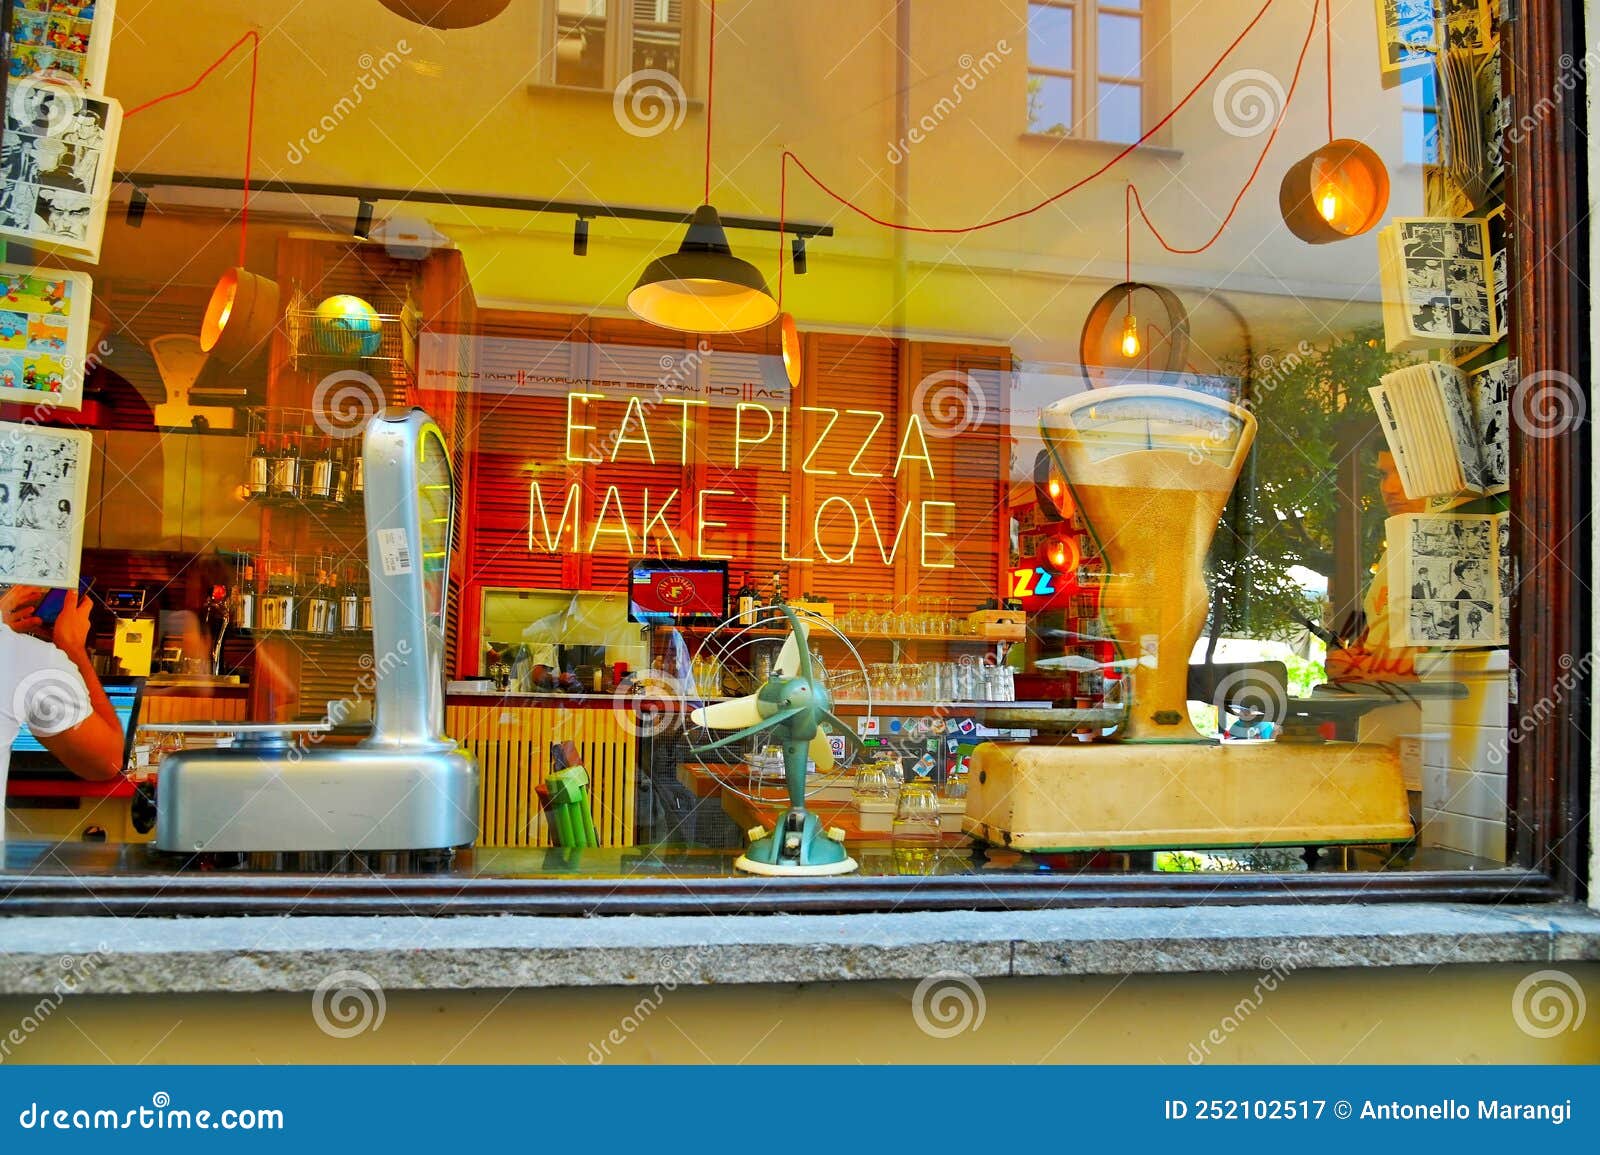 Comer Pizza Hacer El Amor Frases Graciosas De Neón En El Pintoresco  Restaurante Italiano Fotografía editorial - Imagen de cartel, concepto:  252102517